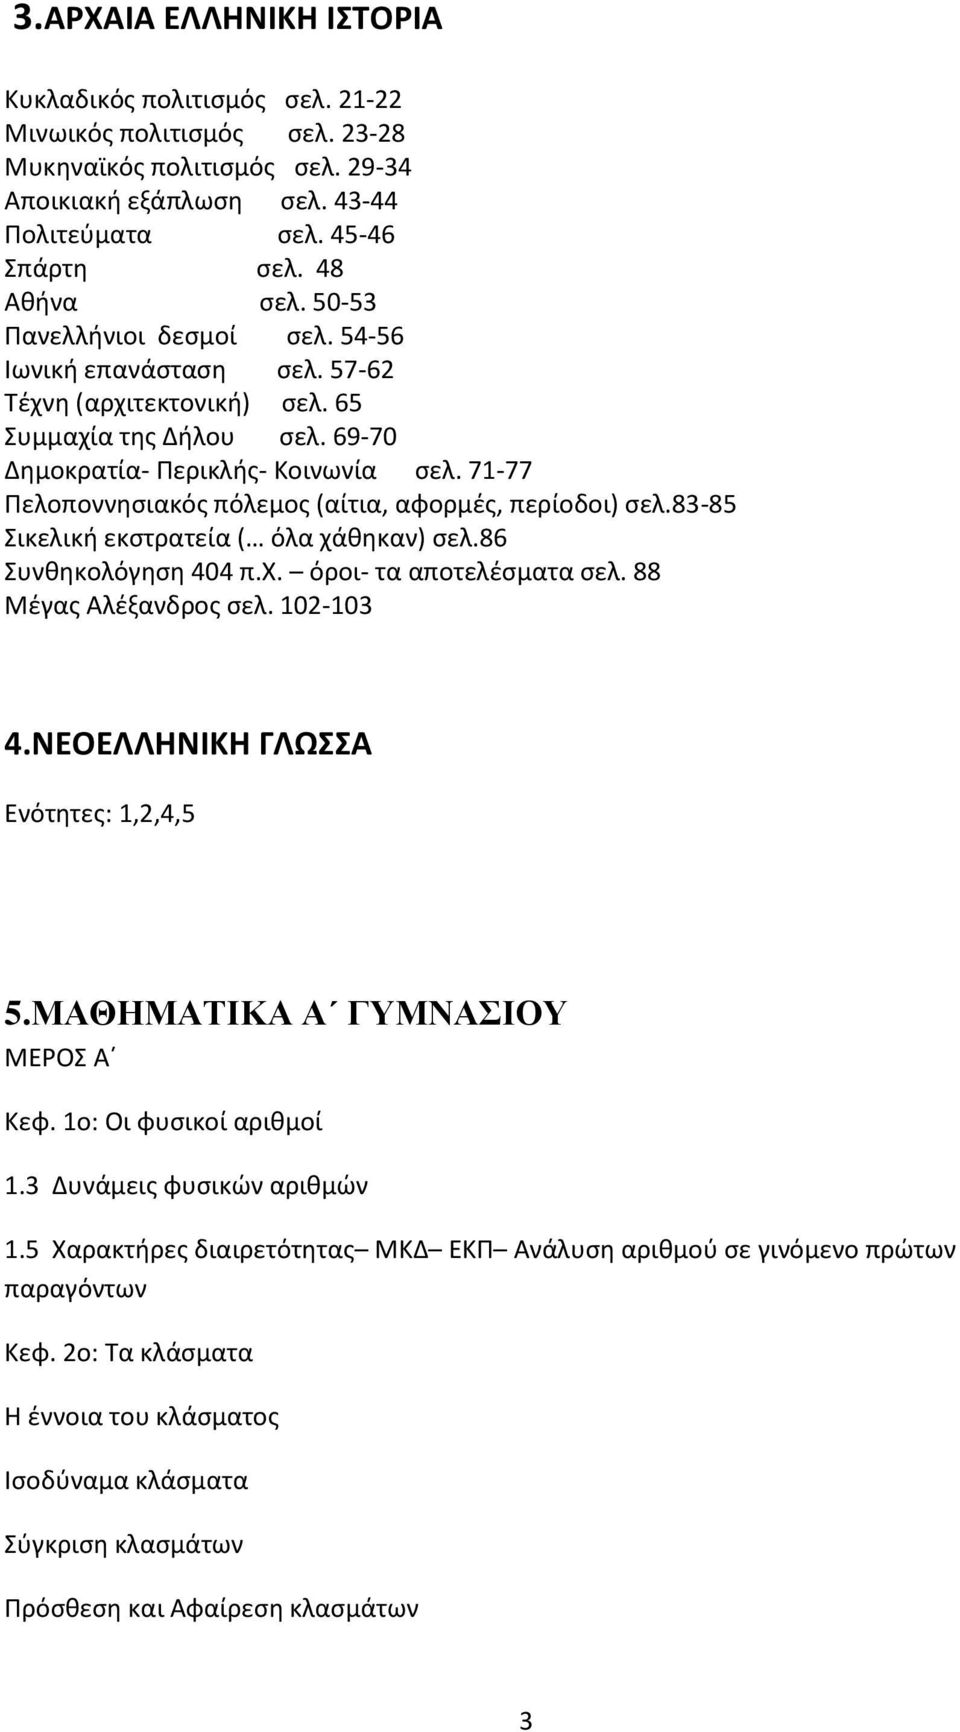 71-77 Πελοποννησιακός πόλεμος (αίτια, αφορμές, περίοδοι) σελ.83-85 Σικελική εκστρατεία ( όλα χάθηκαν) σελ.86 Συνθηκολόγηση 404 π.χ. όροι- τα αποτελέσματα σελ. 88 Μέγας Αλέξανδρος σελ. 102-103 4.